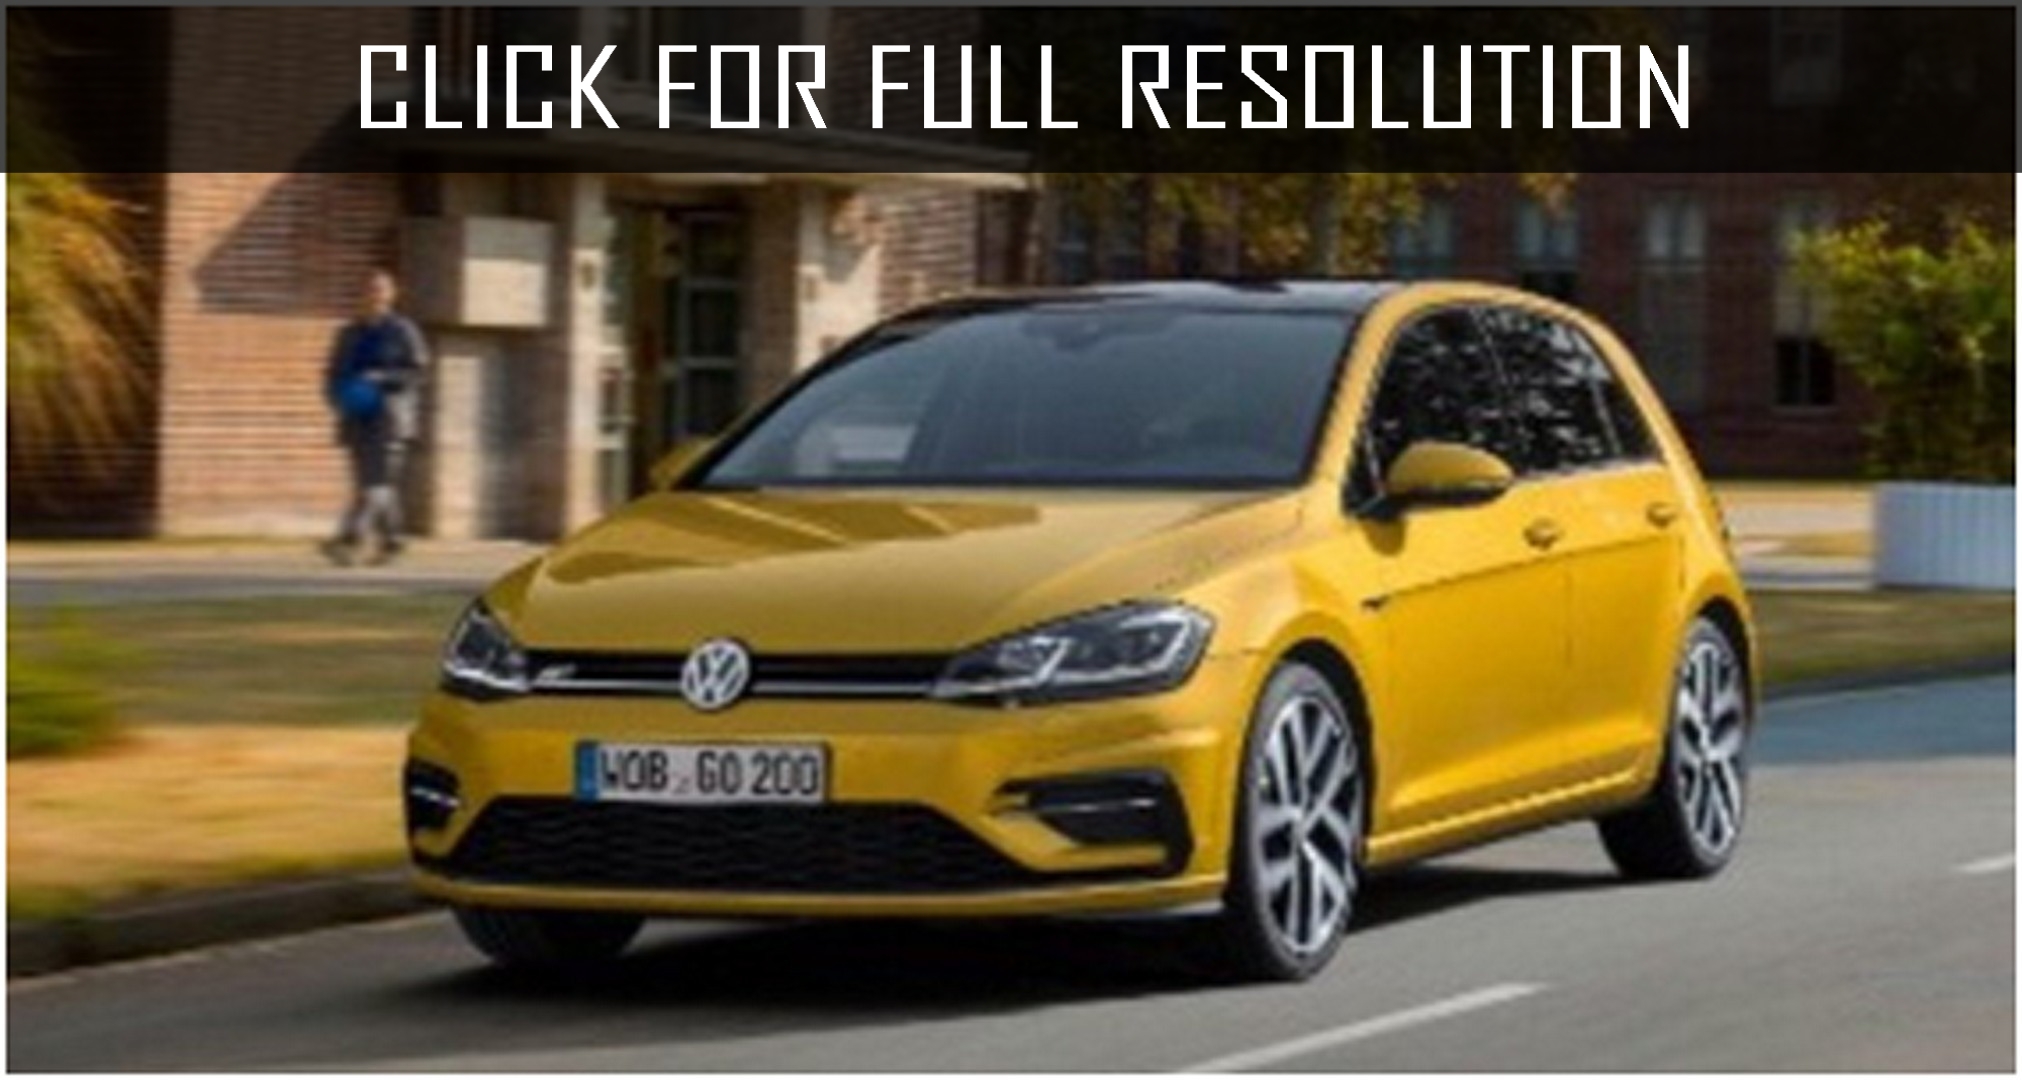 Volkswagen Golf Yellow